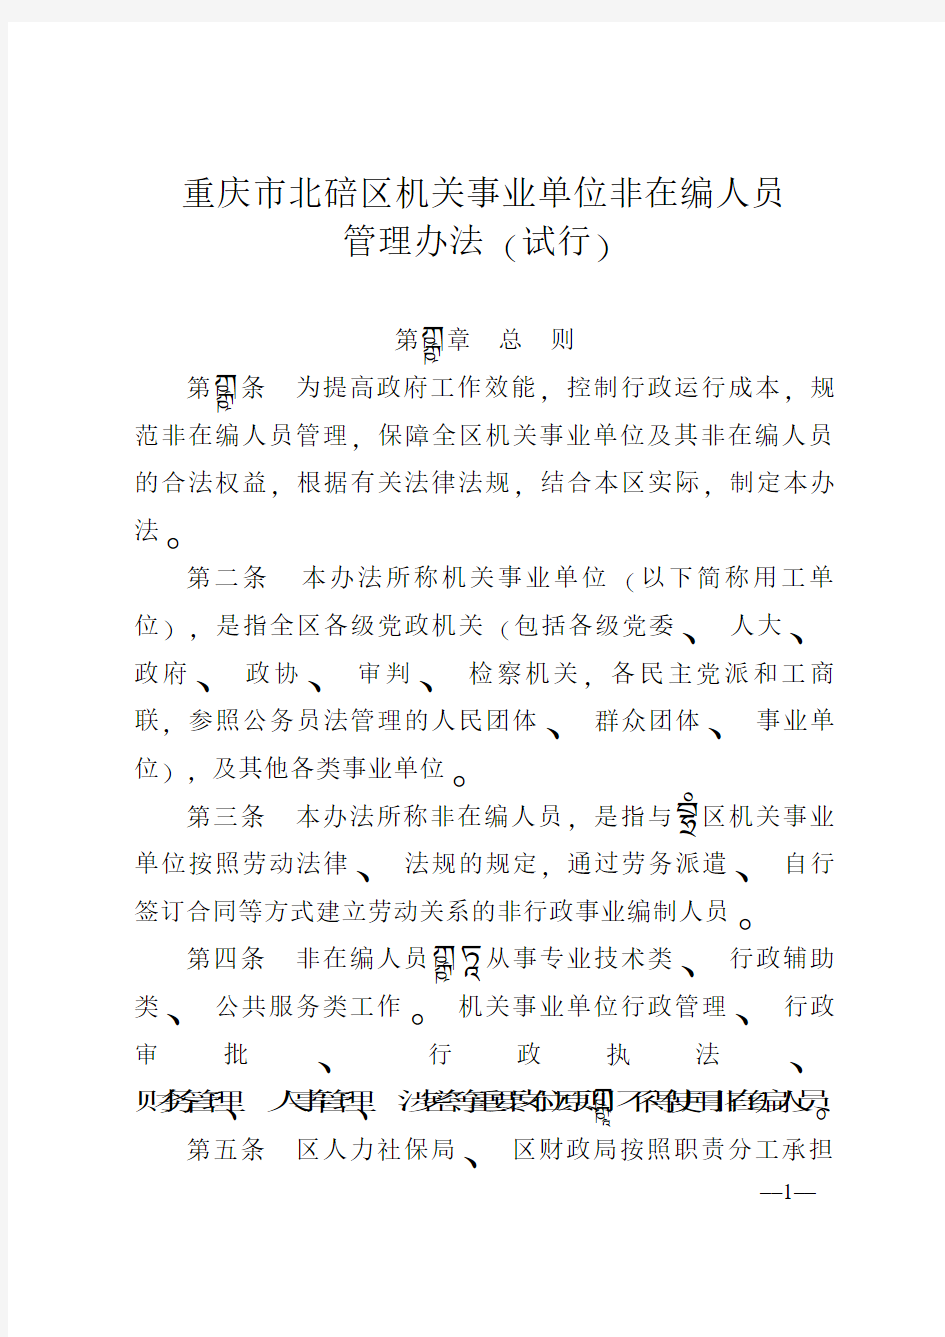 重庆北碚区机关事业单位非在编人员